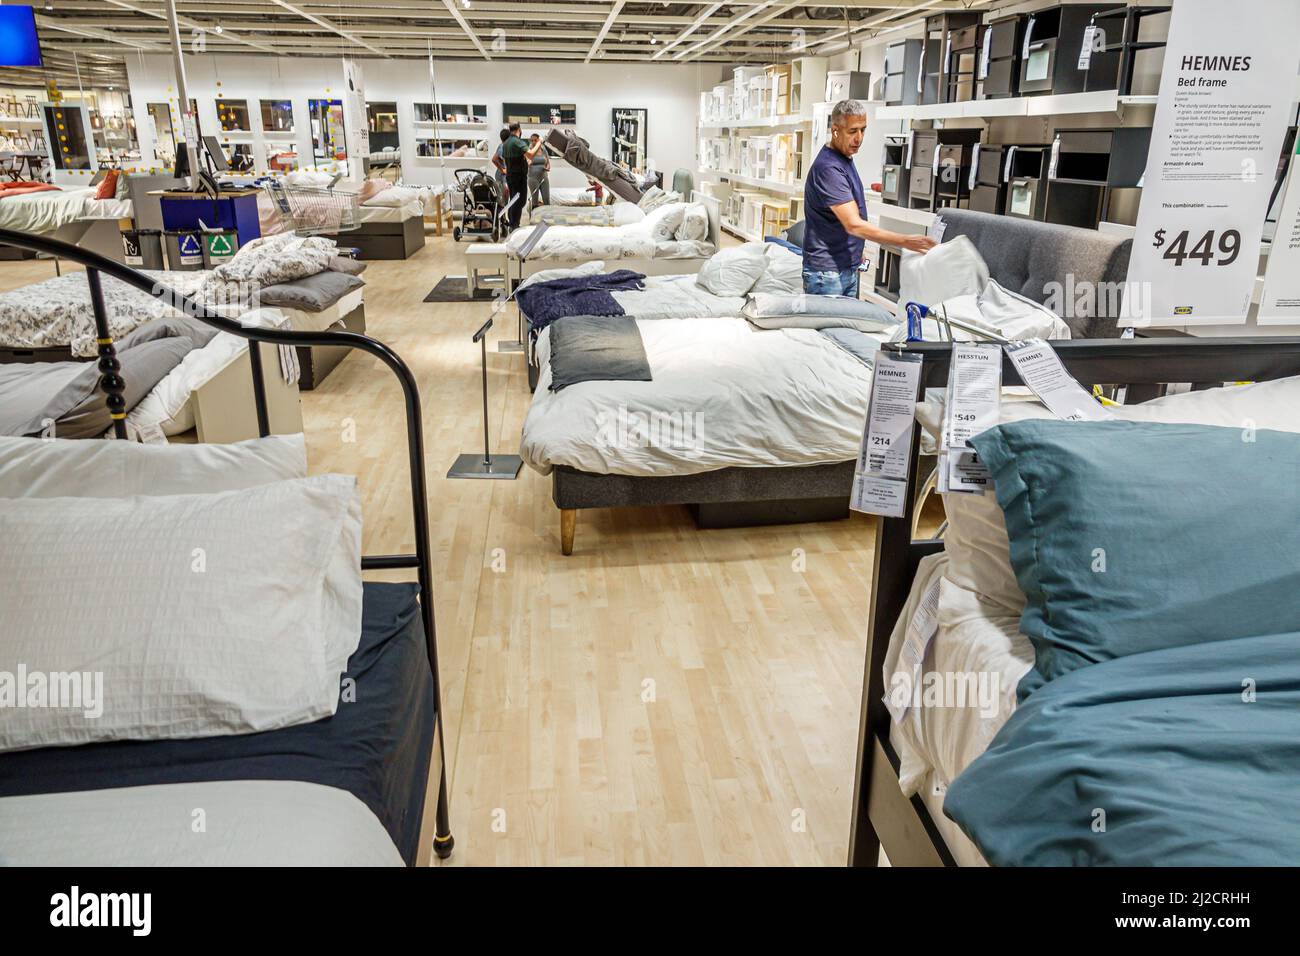 Miami Florida IKEA maison biens meubles accessoires meubles décor shopping acheteurs à l'intérieur de l'affichage intérieur vente lits homme recherche Banque D'Images